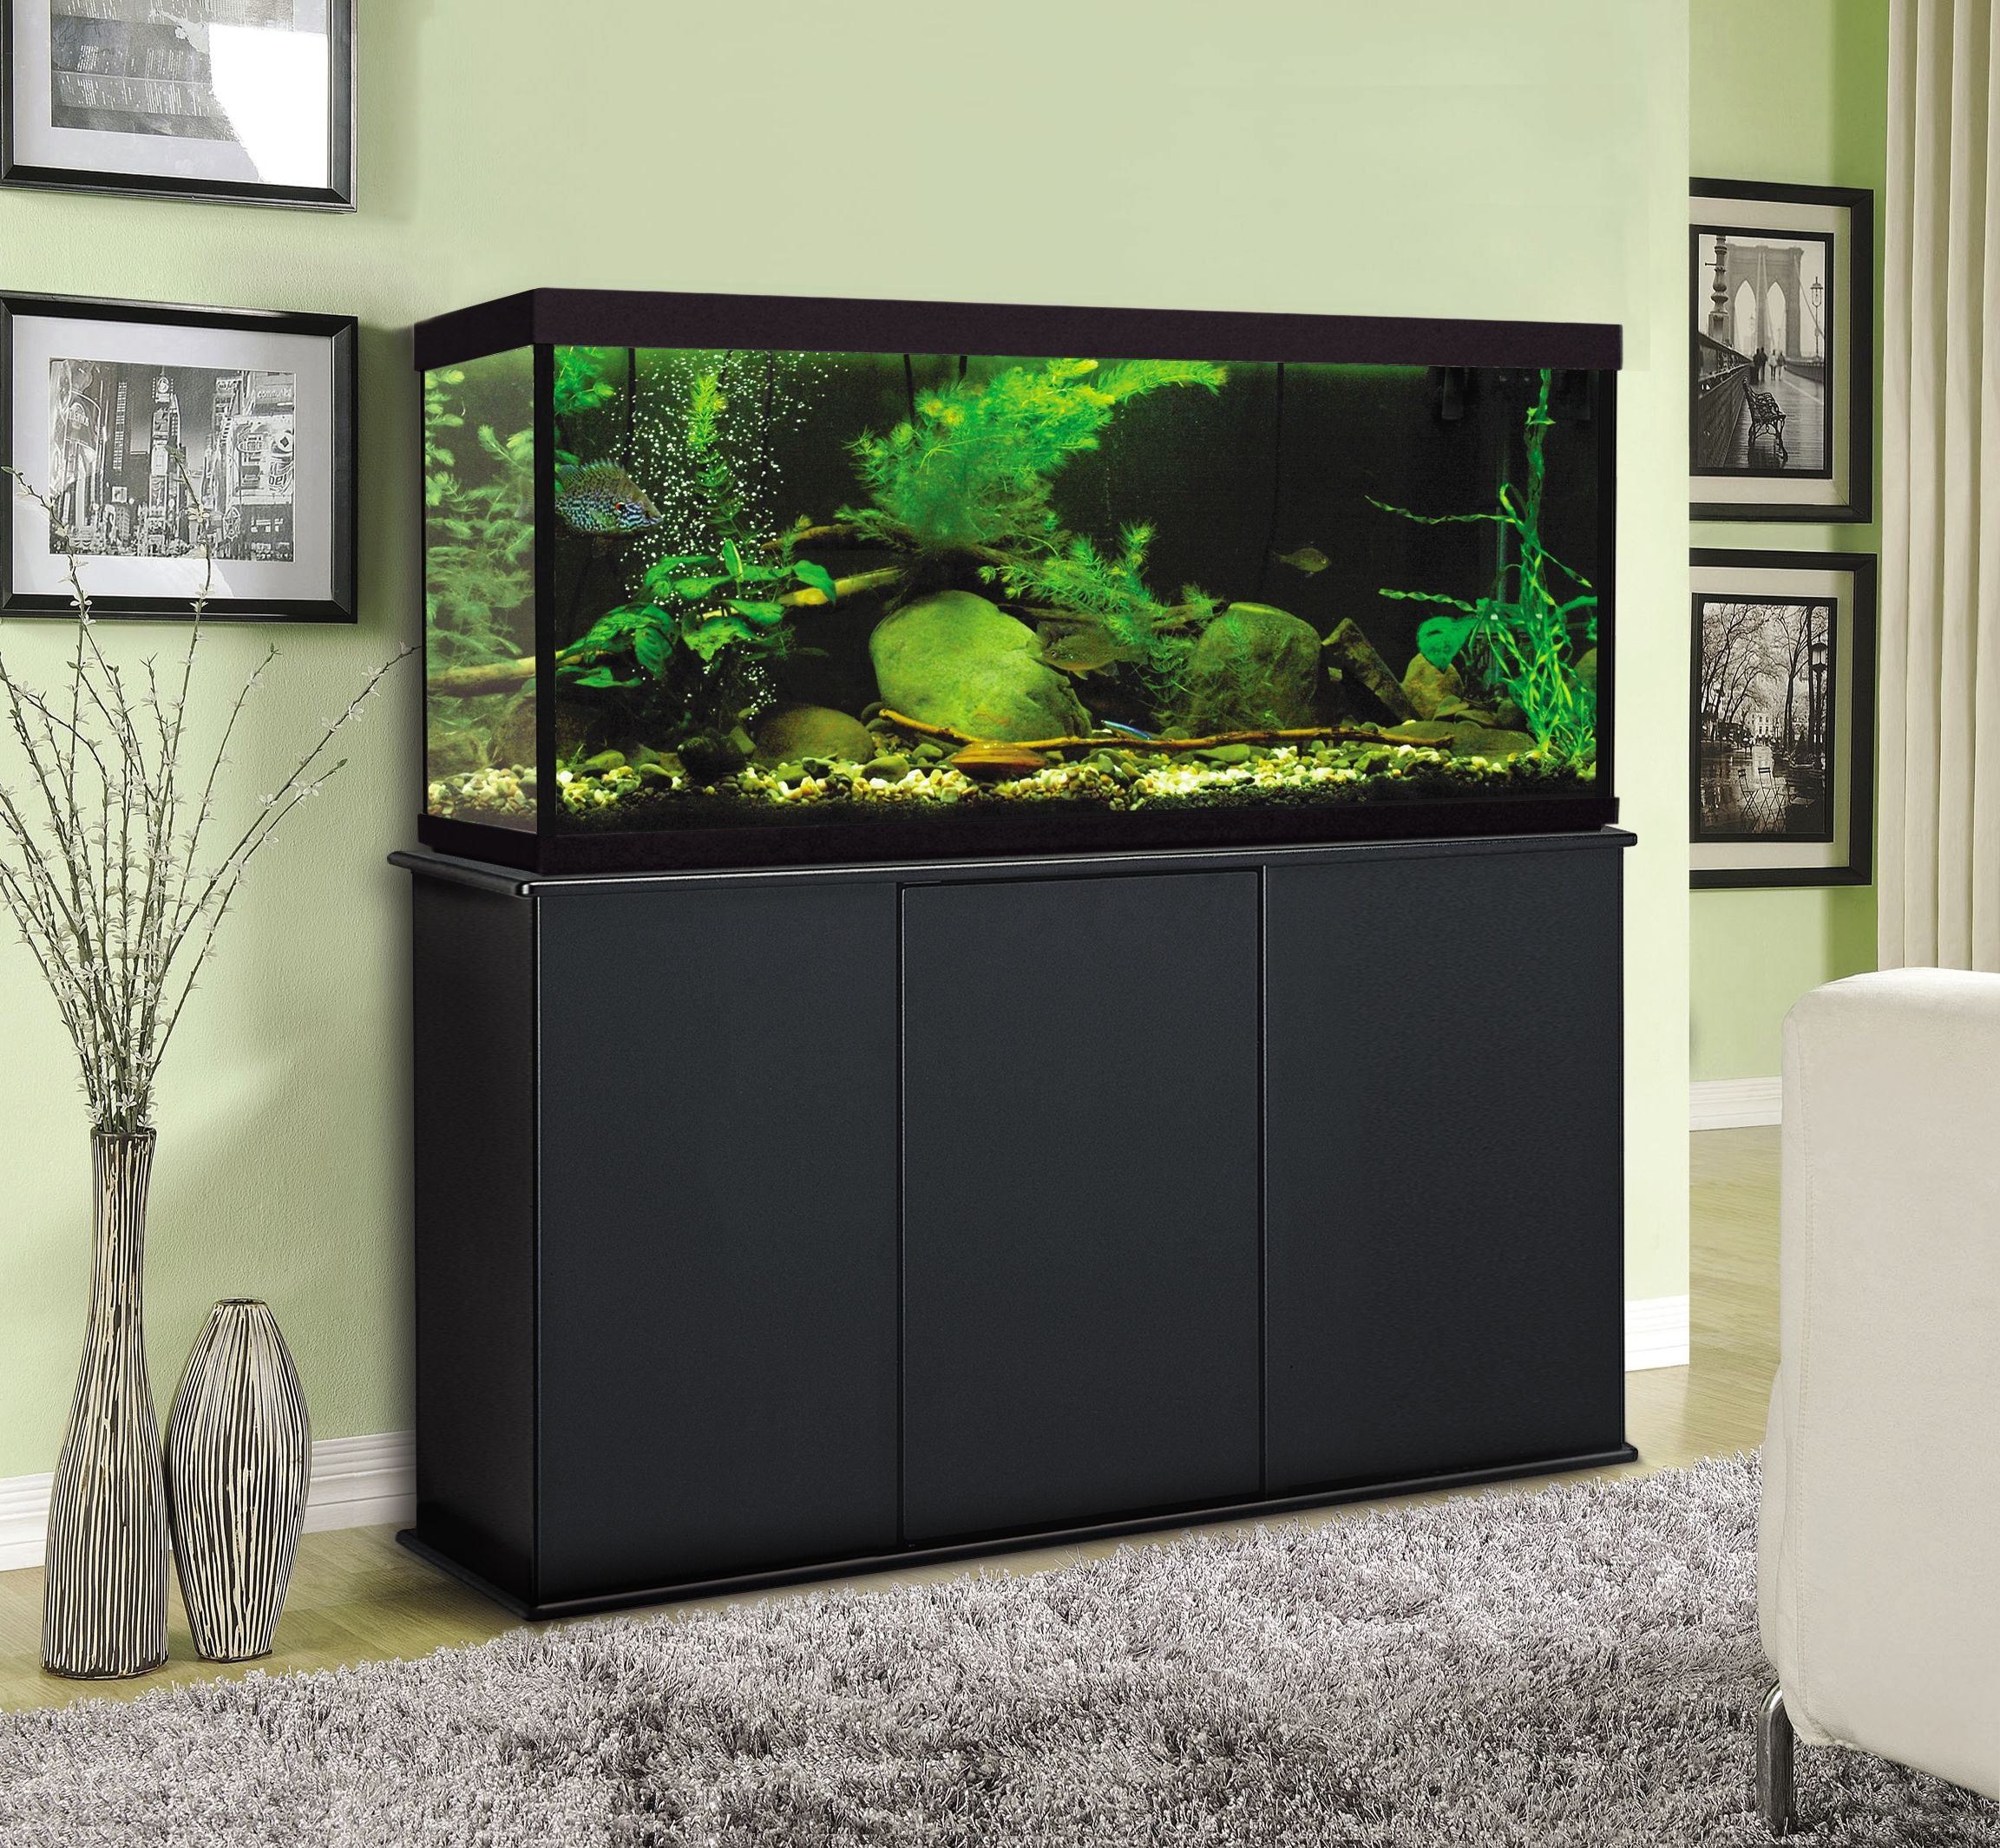 Aquatic Fundamentals 55 Gallon Black Upright Aquarium Stand – Fish Tank USA